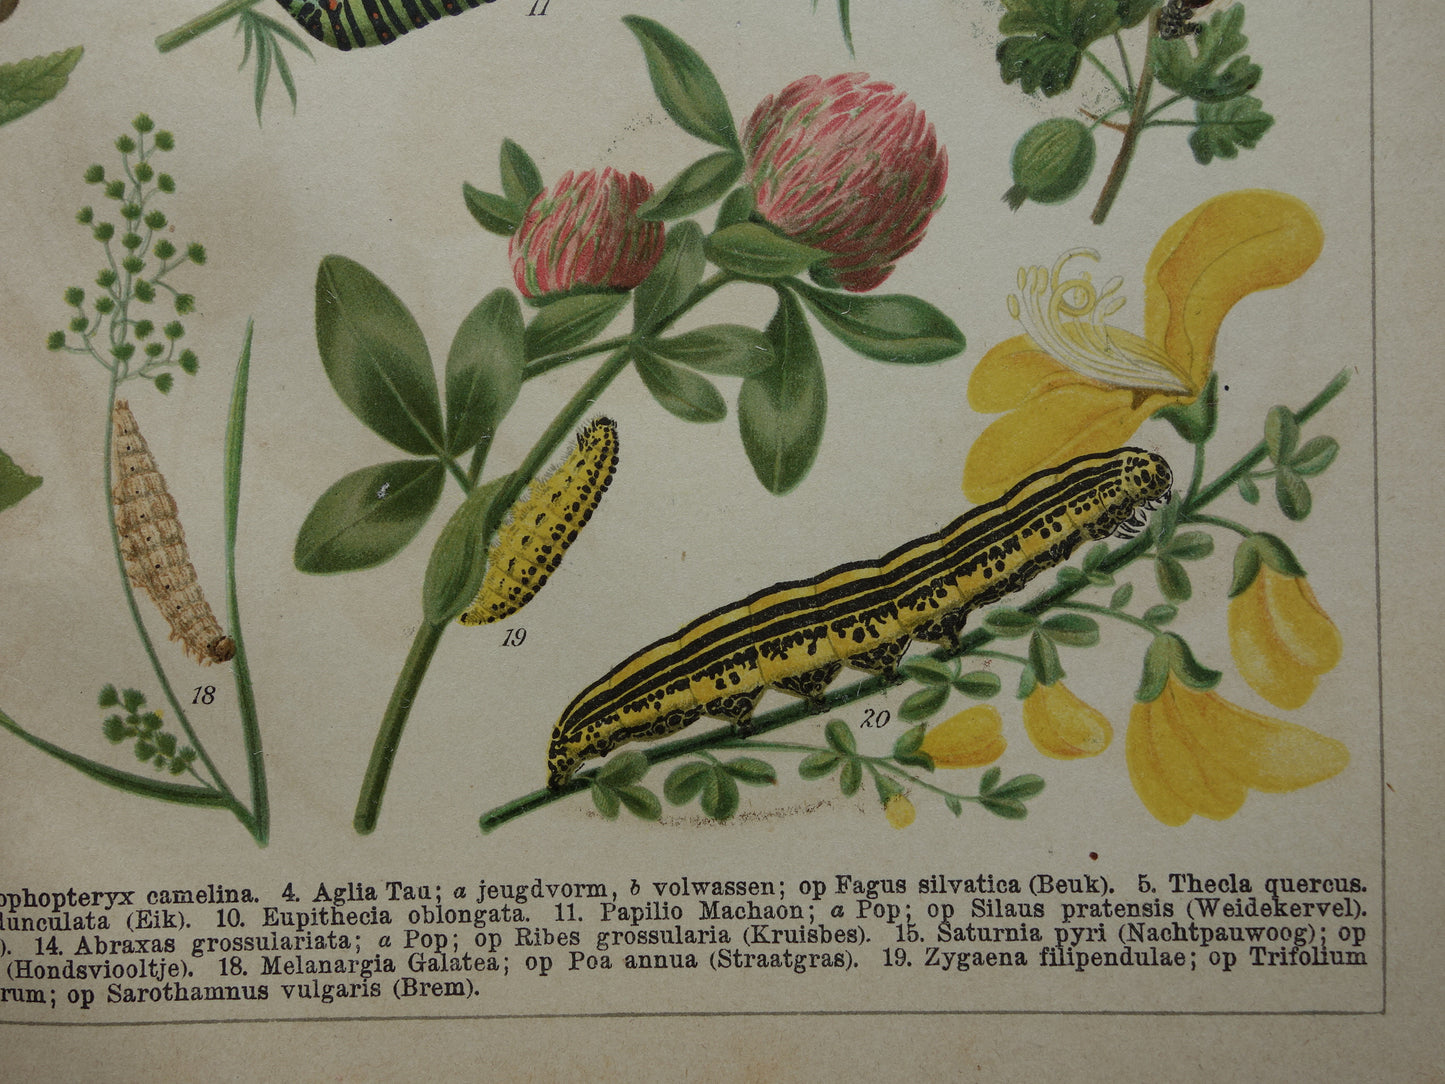 Oude prent van rupsen Originele antieke print rupssoorten uit 1910 Vintage rups illustratie vlinders vlinder